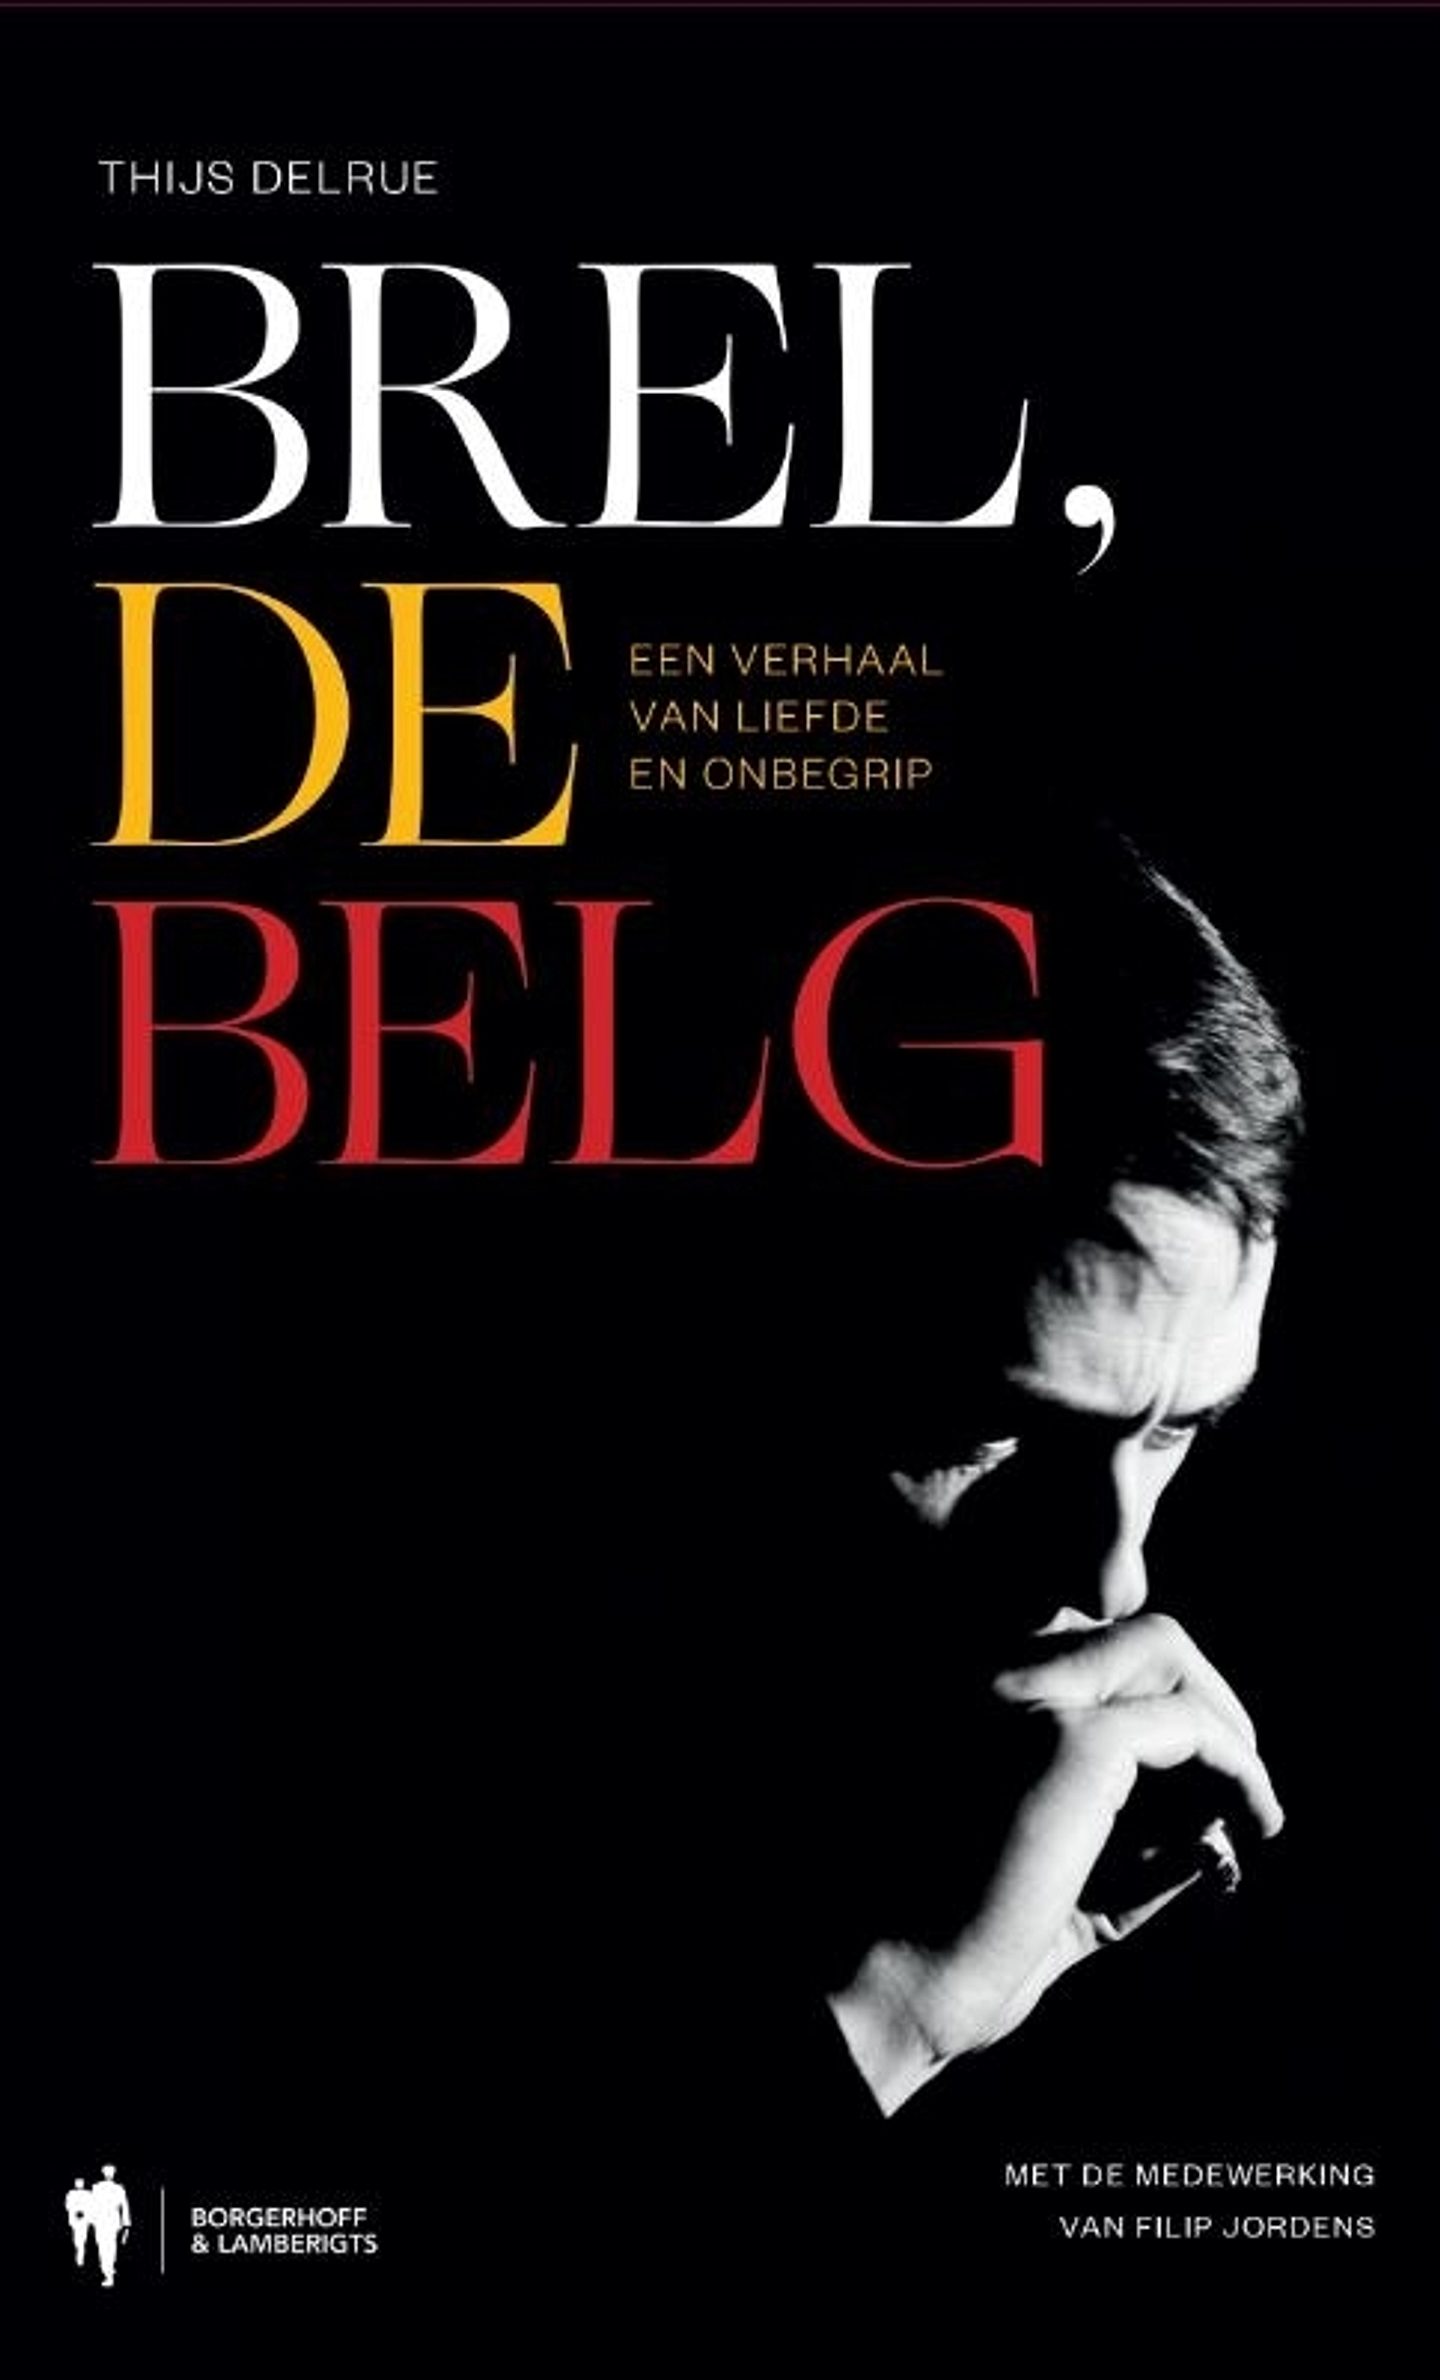 Brel, de Belg